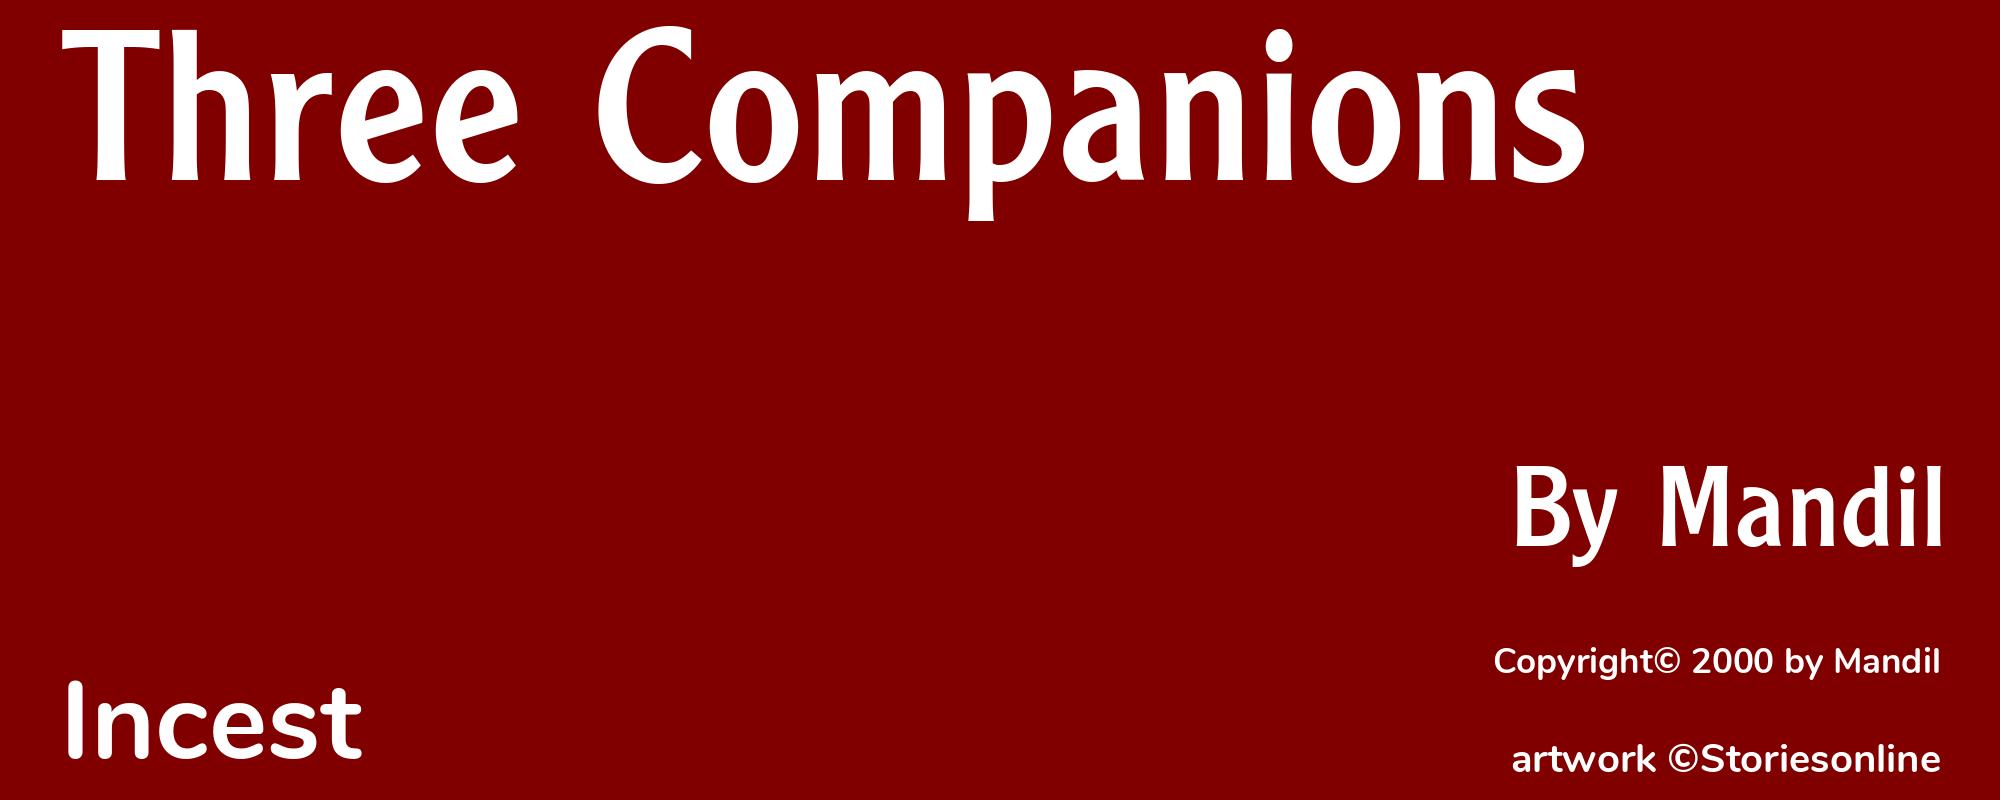 Three Companions - Cover